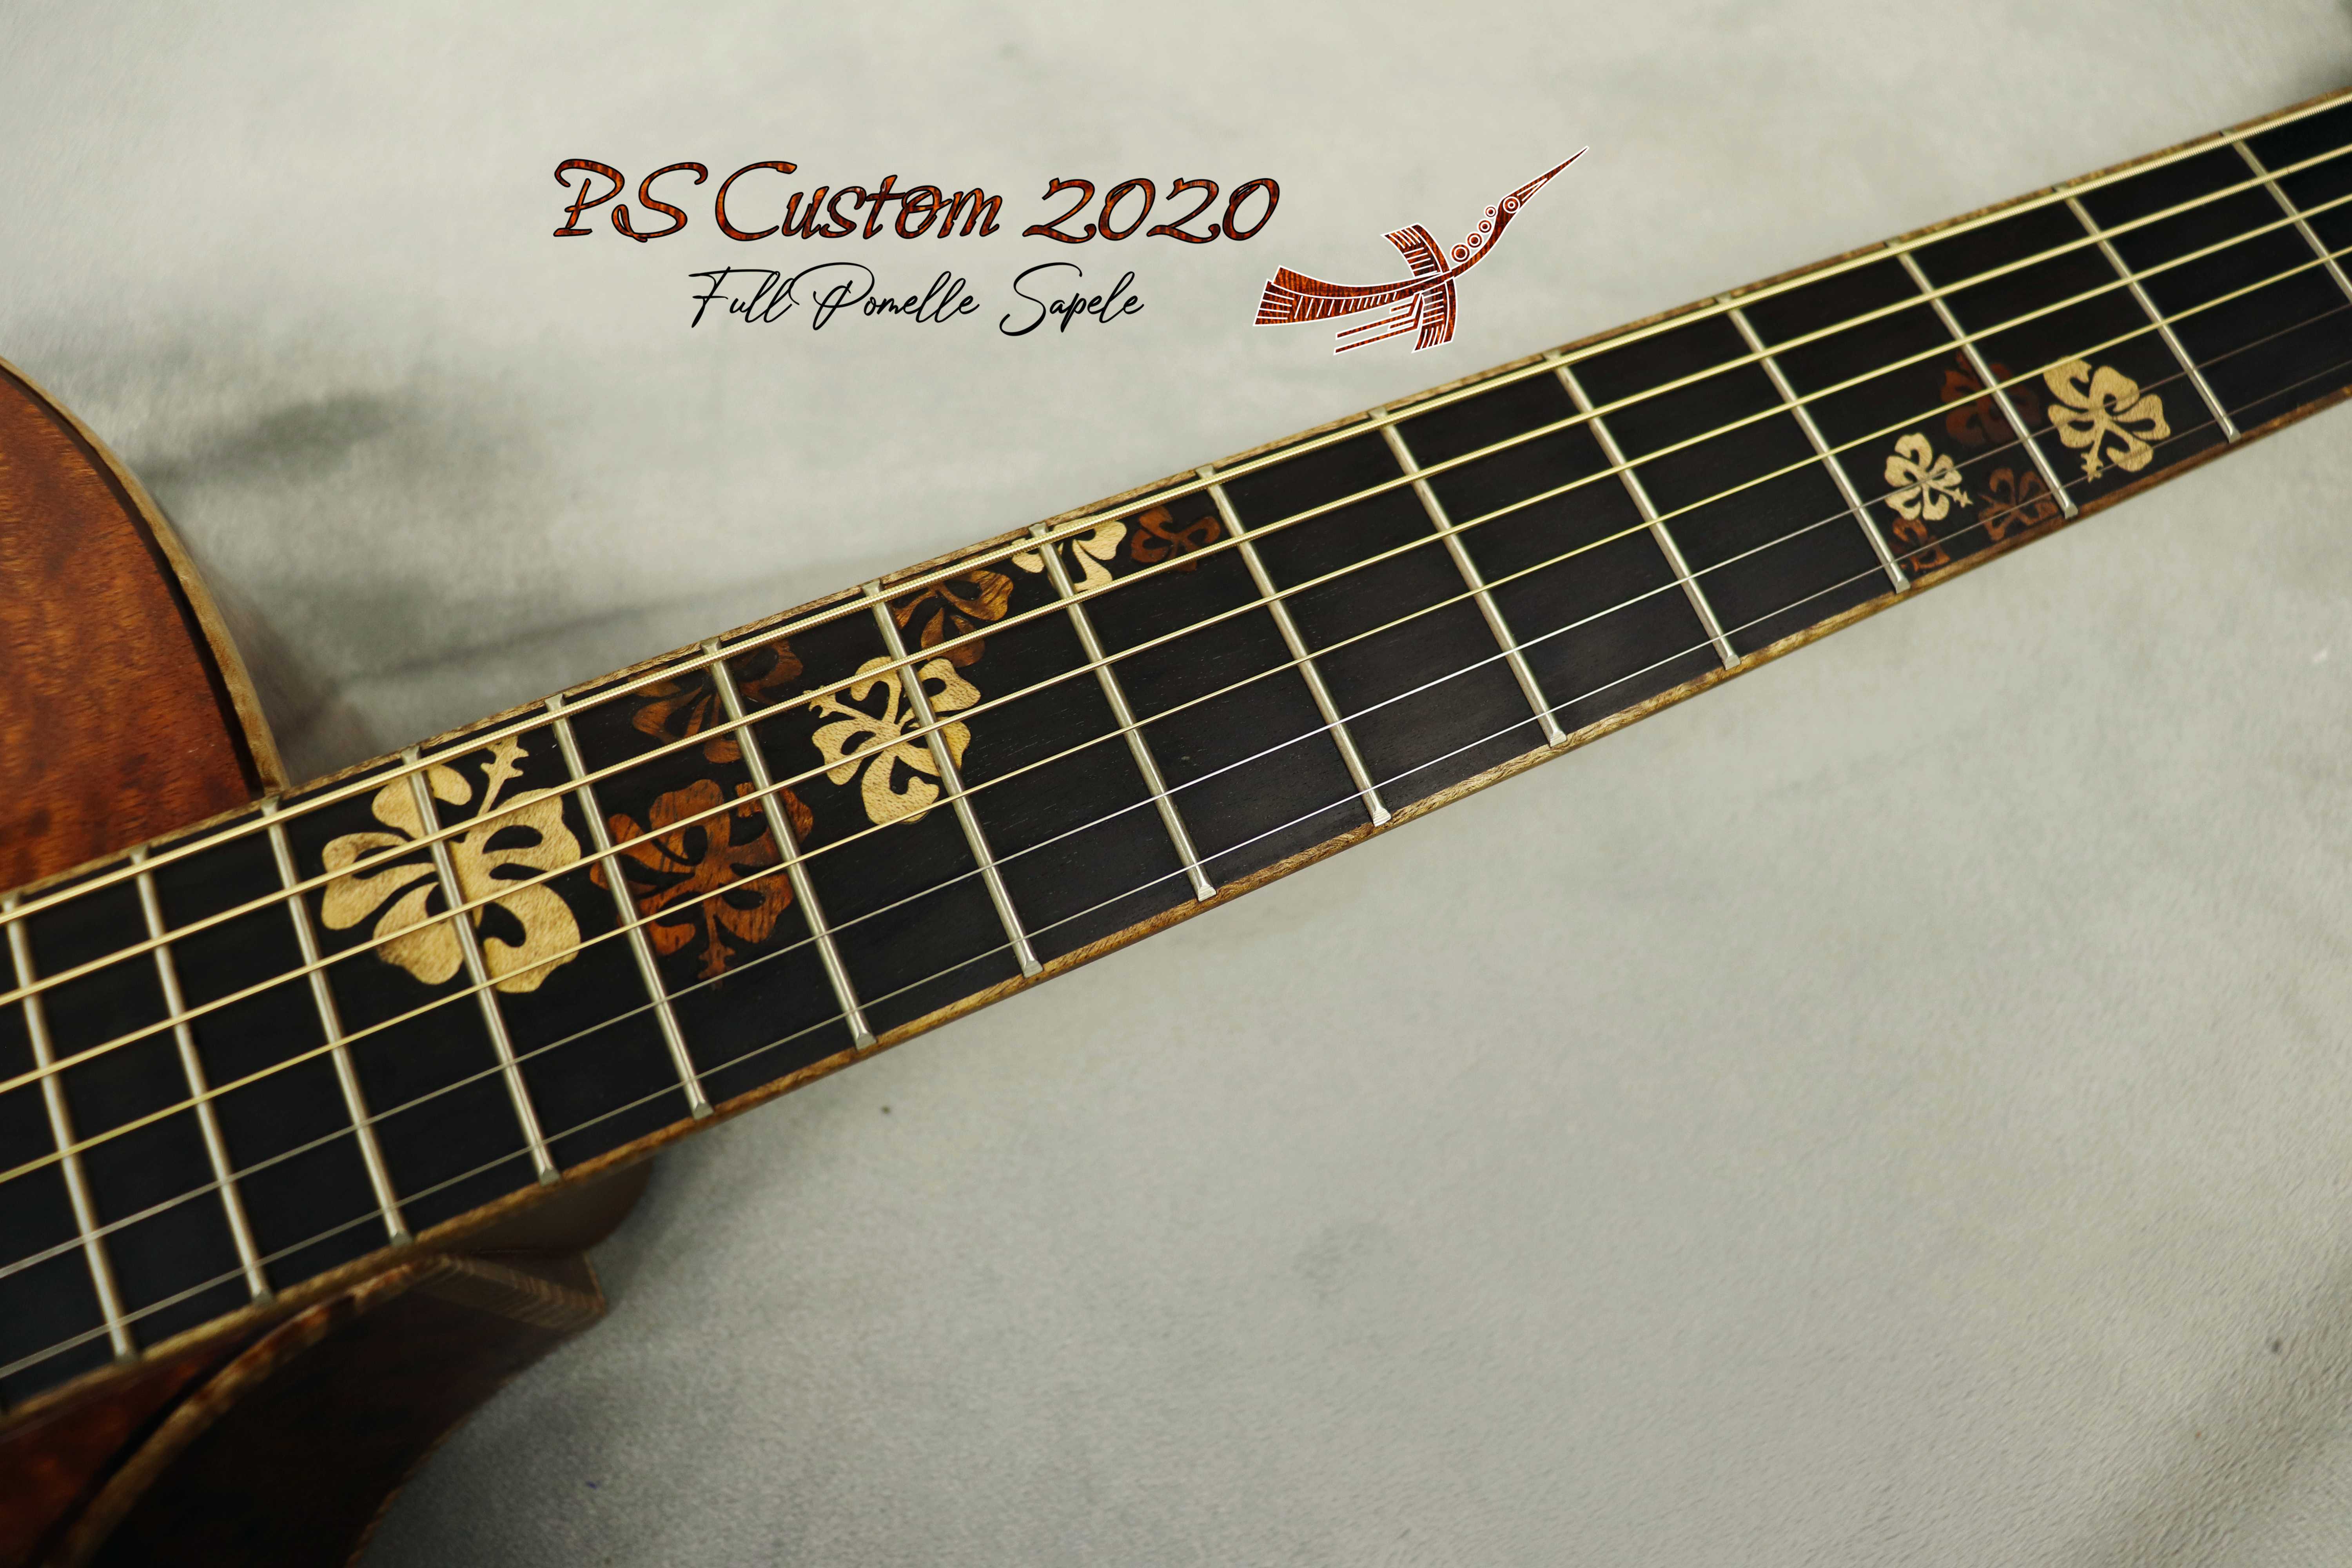 PS Custom Full Pomelle Sapele 2020